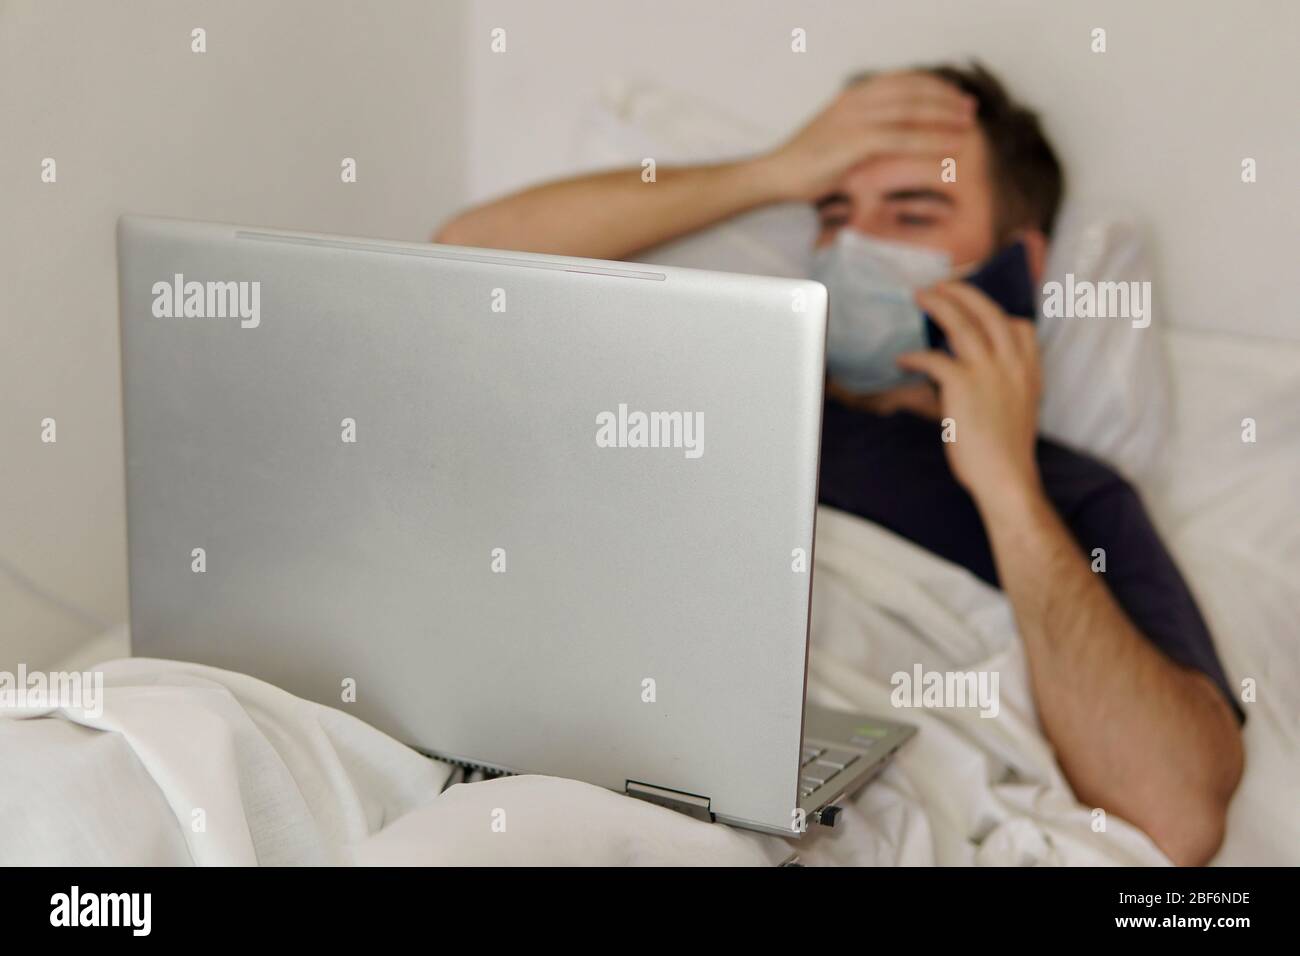 Un homme adulte est allongé dans un lit d'hôpital avec un ordinateur portable tenant sa tête. Concept de travail à distance pendant la pandémie du coronavirus Banque D'Images